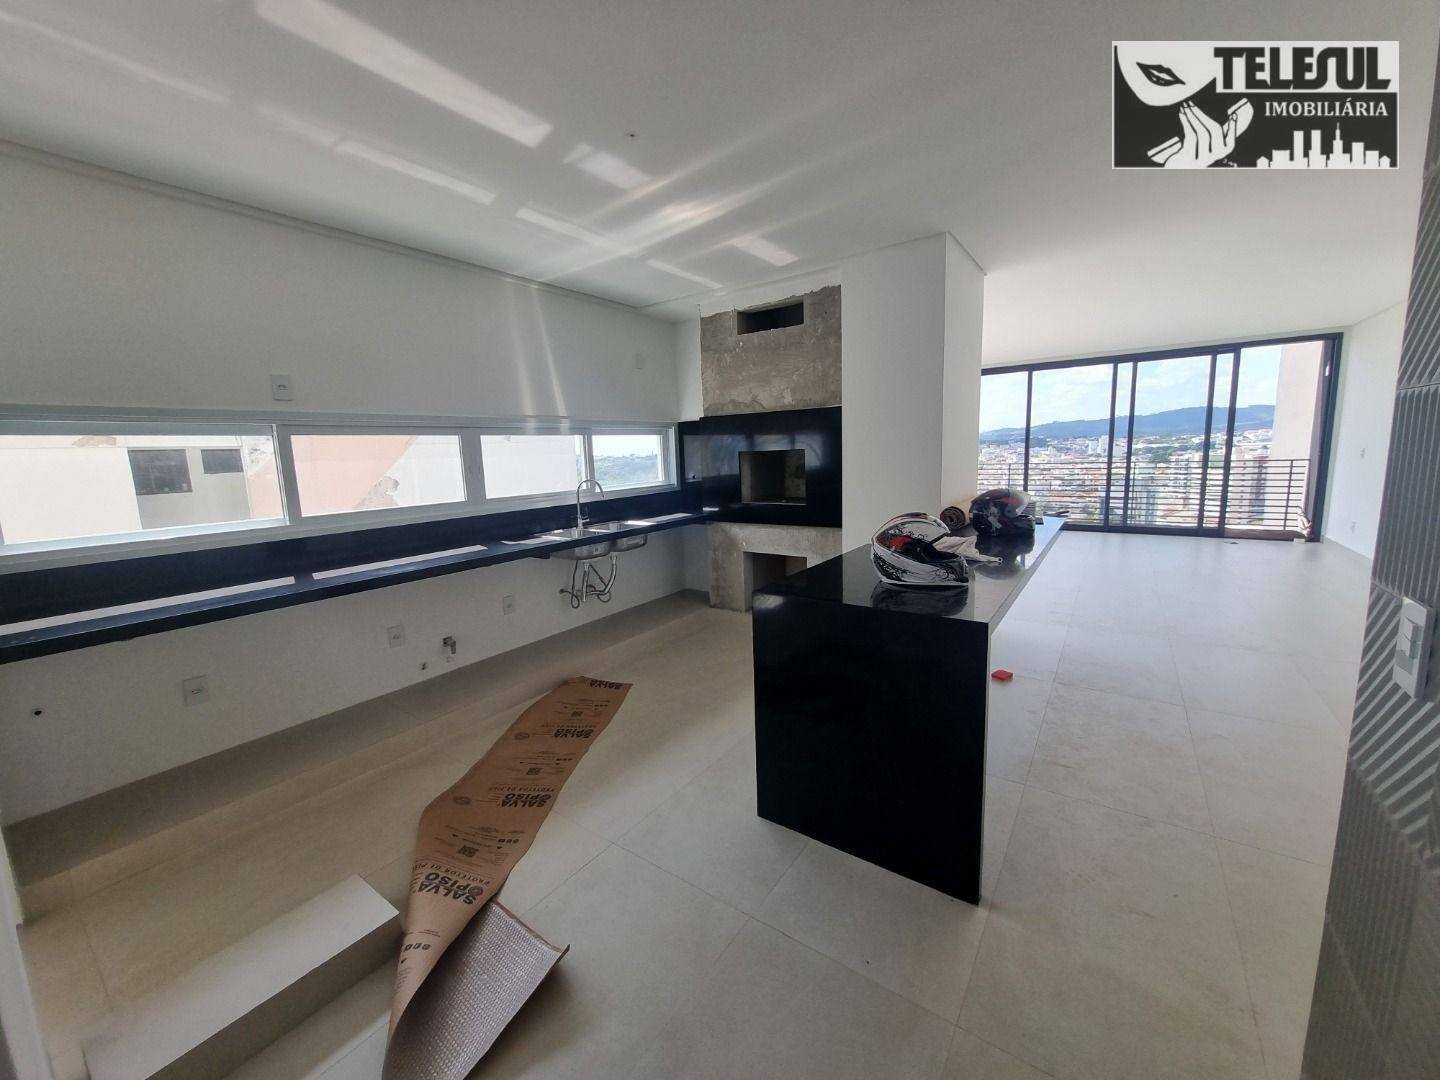 Apartamento, 3 quartos, 152 m² - Foto 2